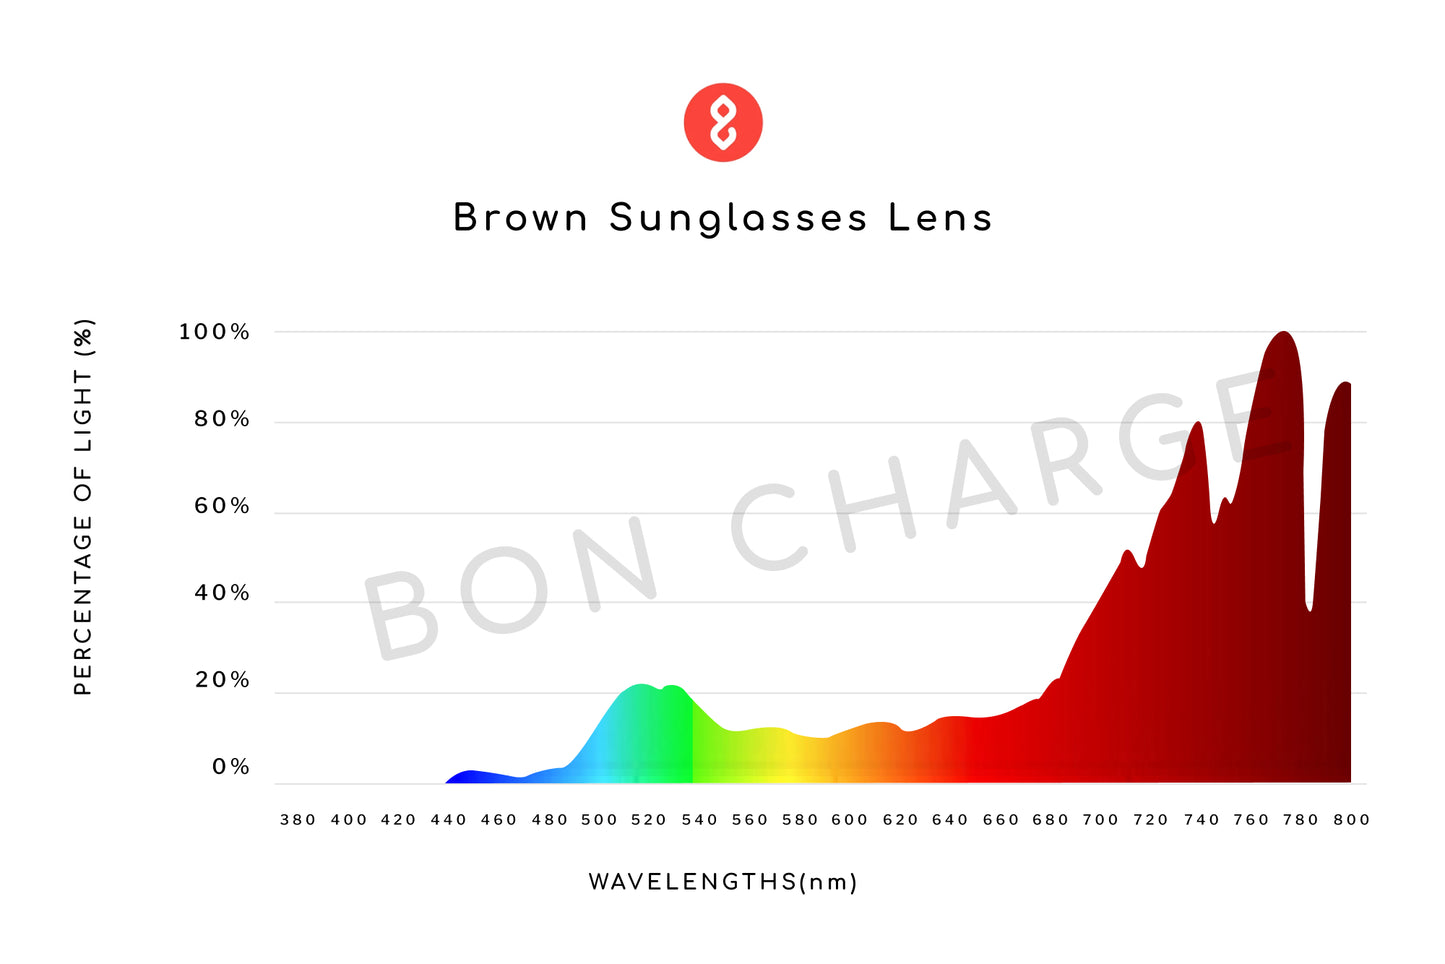 Lennon Sunglasses Prescription (Brown)